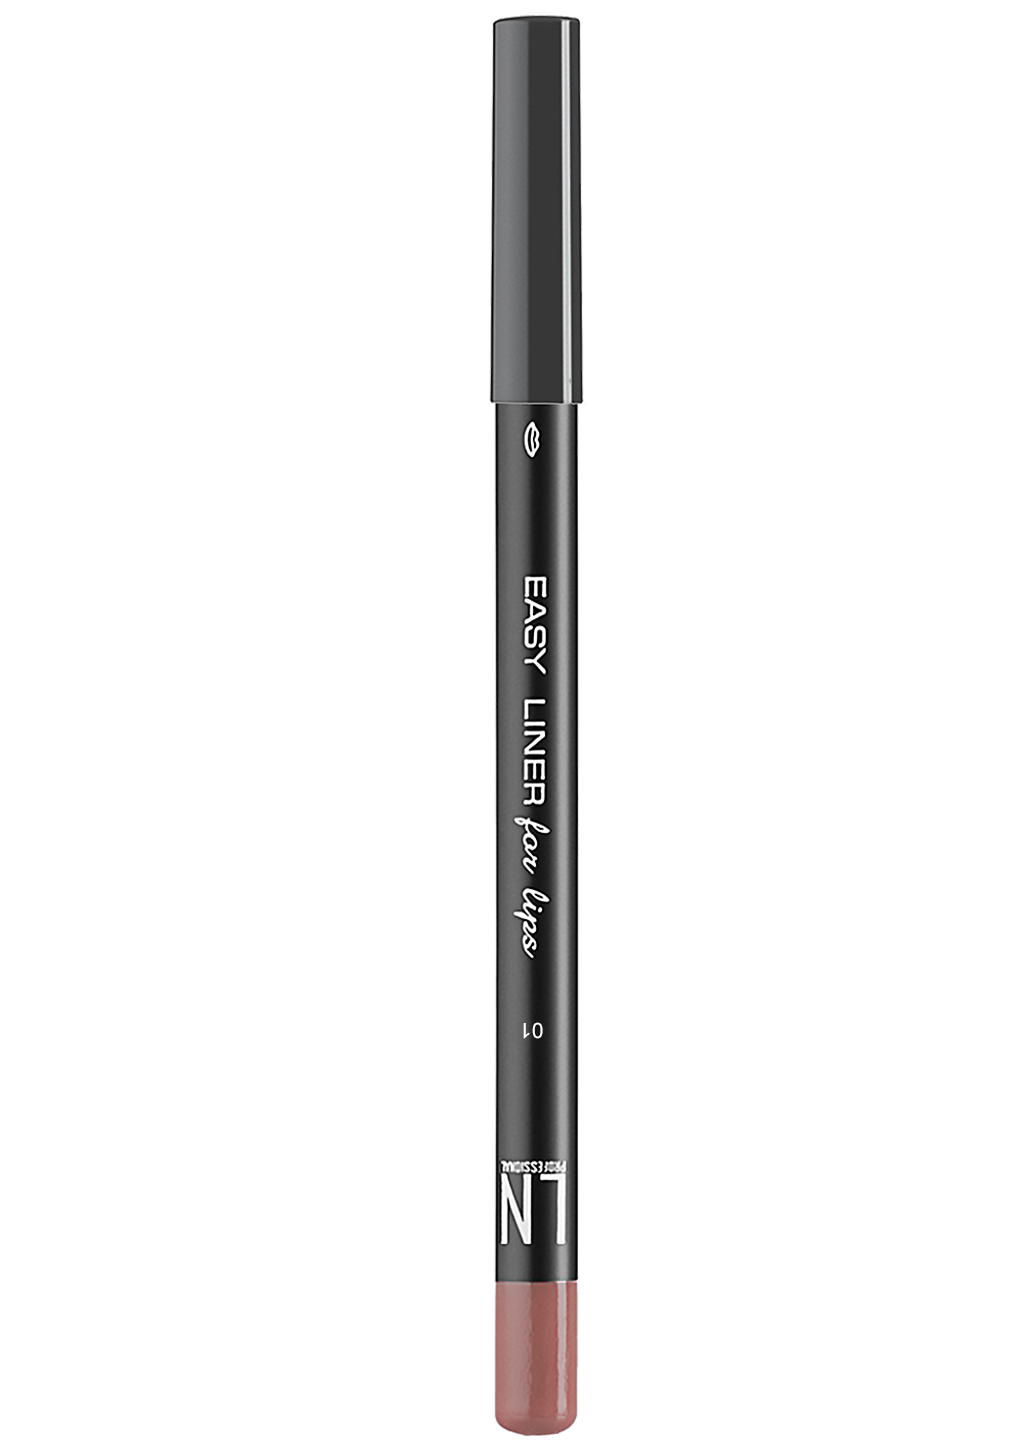 Олівець для губ LN Professional Easy Liner for Lips, відтінок 01, 1,7 г - фото 1